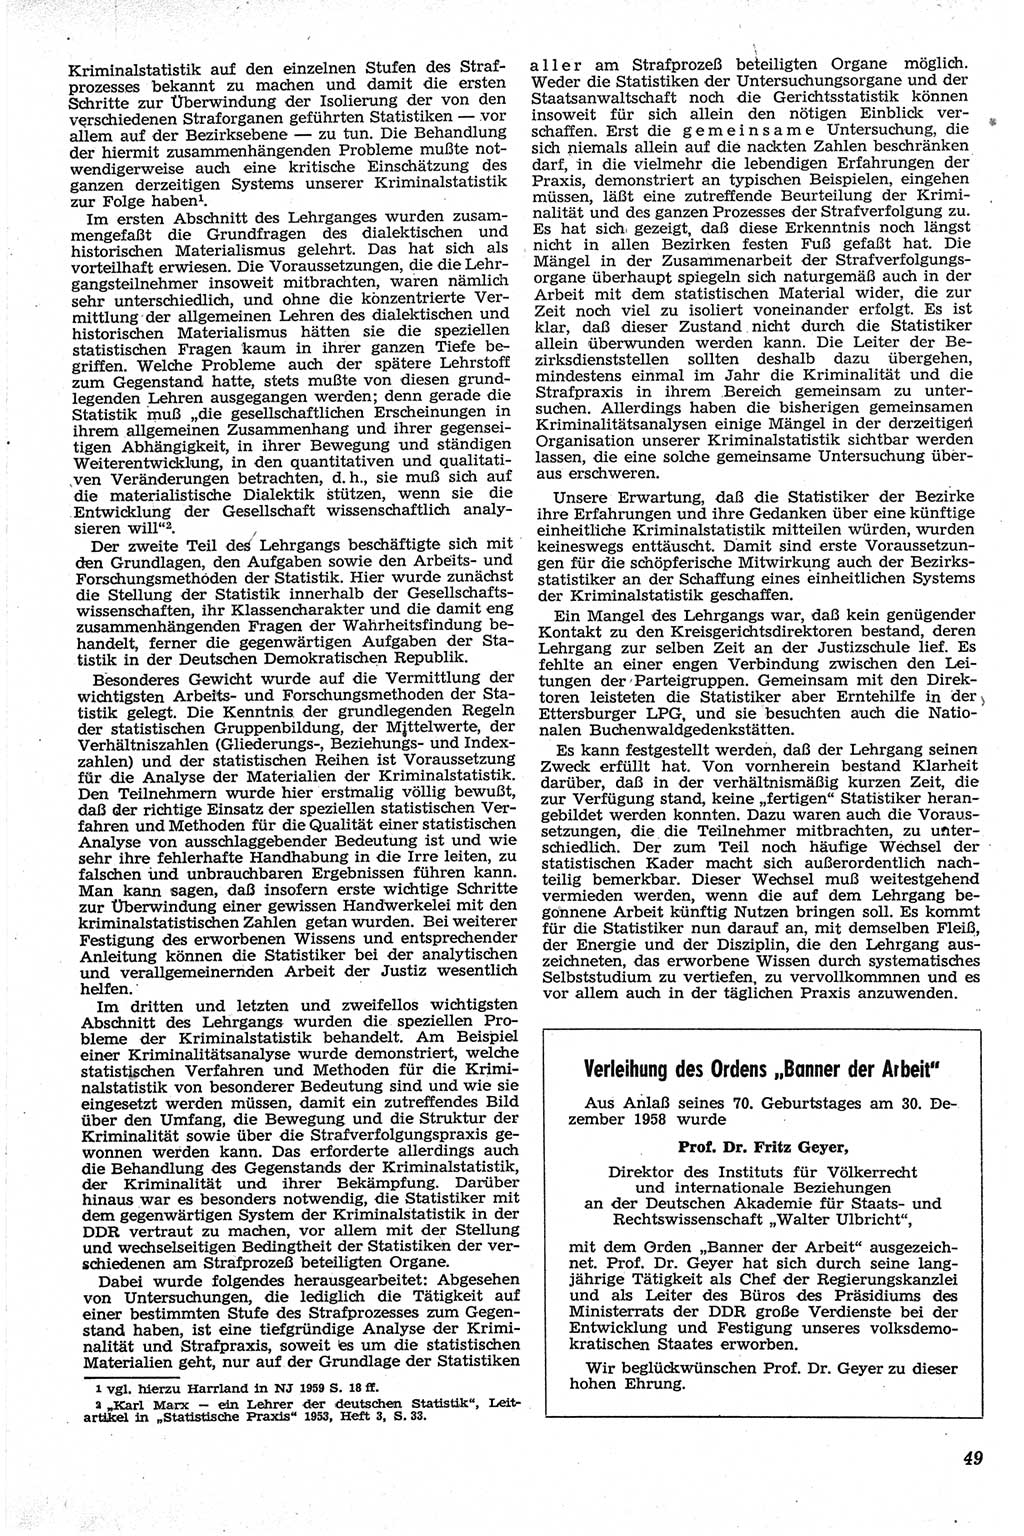 Neue Justiz (NJ), Zeitschrift für Recht und Rechtswissenschaft [Deutsche Demokratische Republik (DDR)], 13. Jahrgang 1959, Seite 49 (NJ DDR 1959, S. 49)